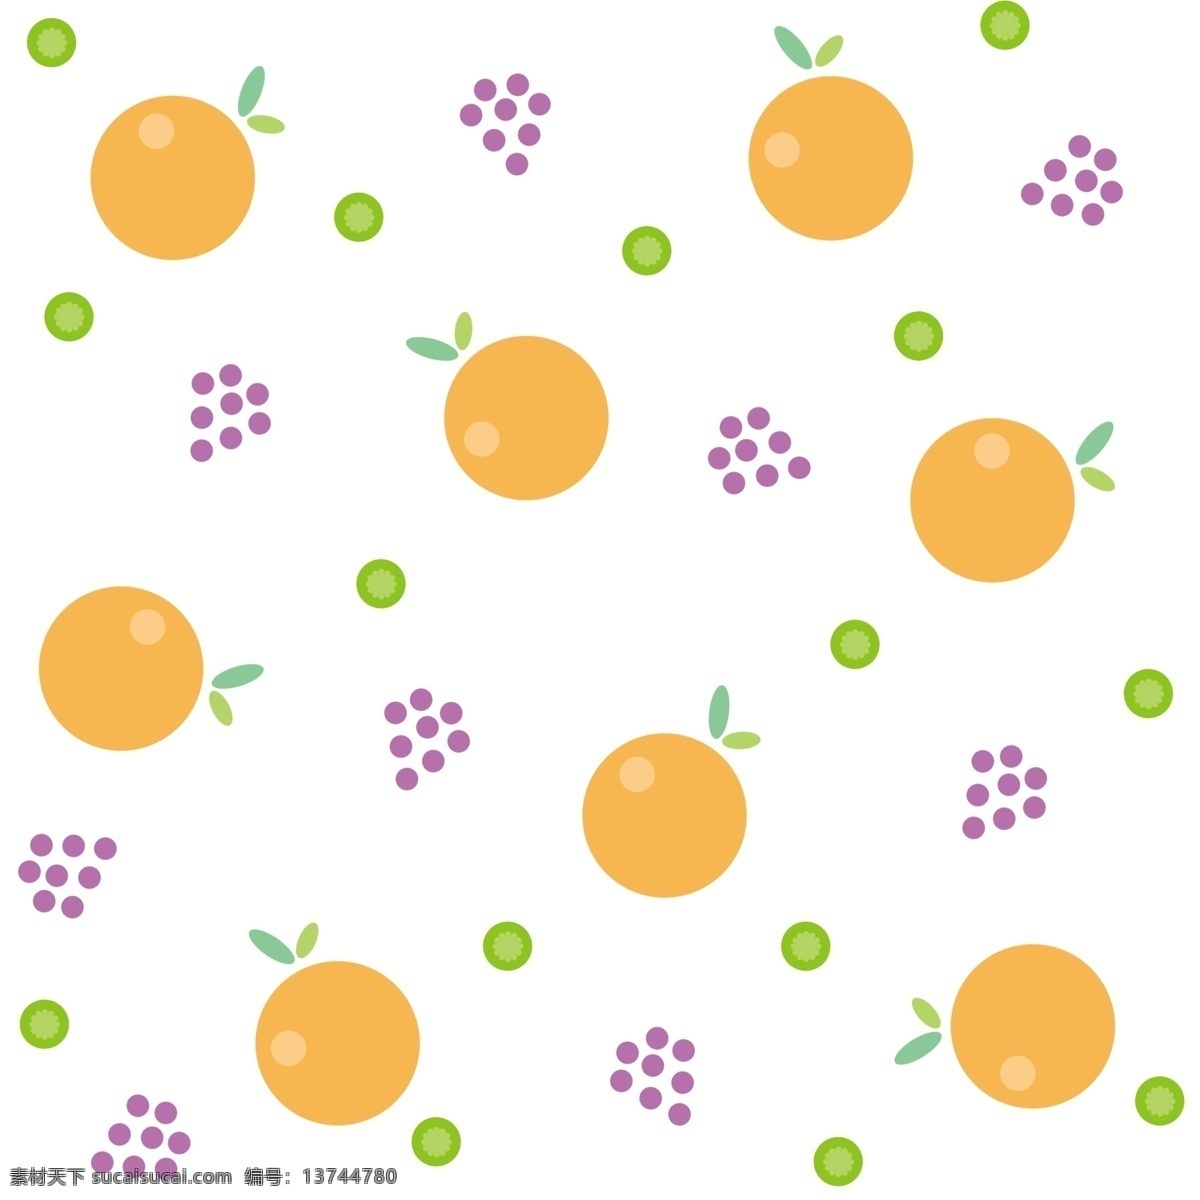 橙子 底纹 装饰 插画 不规则底纹 橙子底纹 圆形橙子 漂亮的底纹 水果底纹 食物底纹 漂浮的底纹